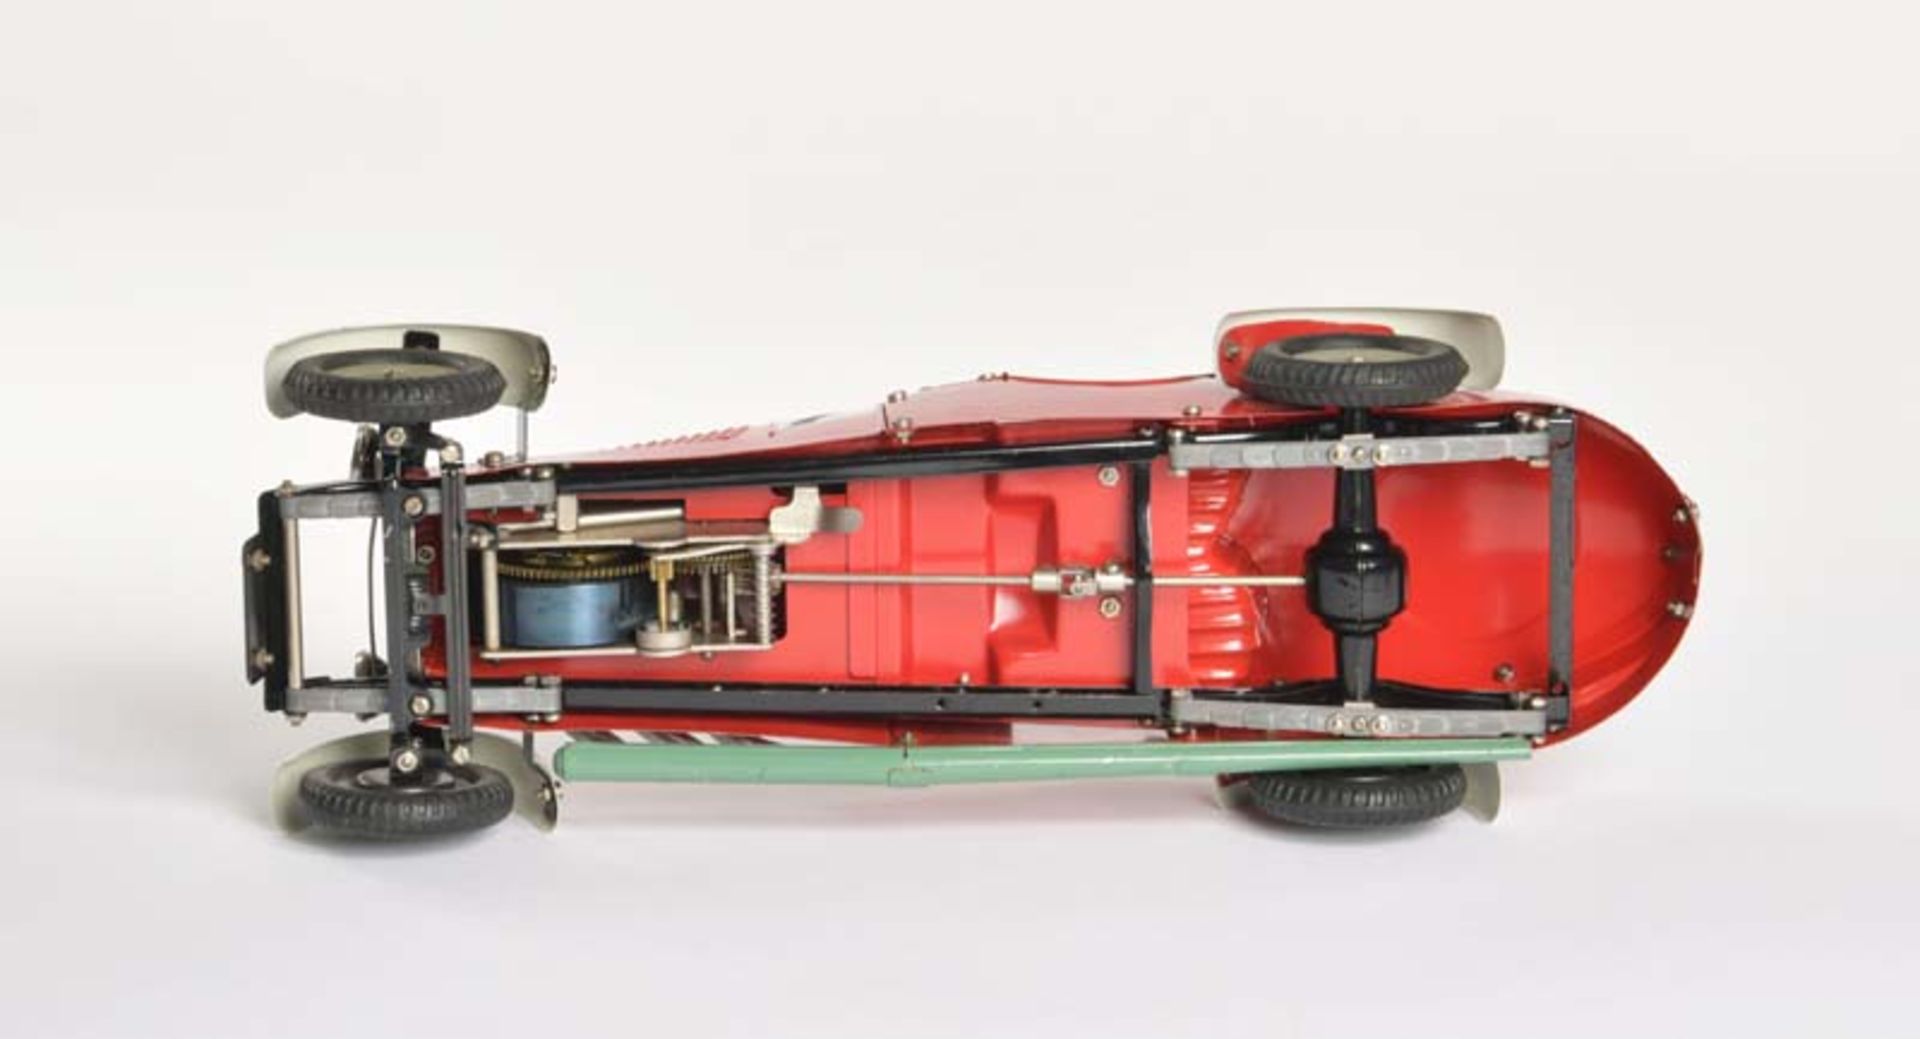 Märklin, Baukastenauto Rennwagen rot No 1107R, Germany VK, 37 cm, Blech, UW ok, sehr schöner - Bild 3 aus 3